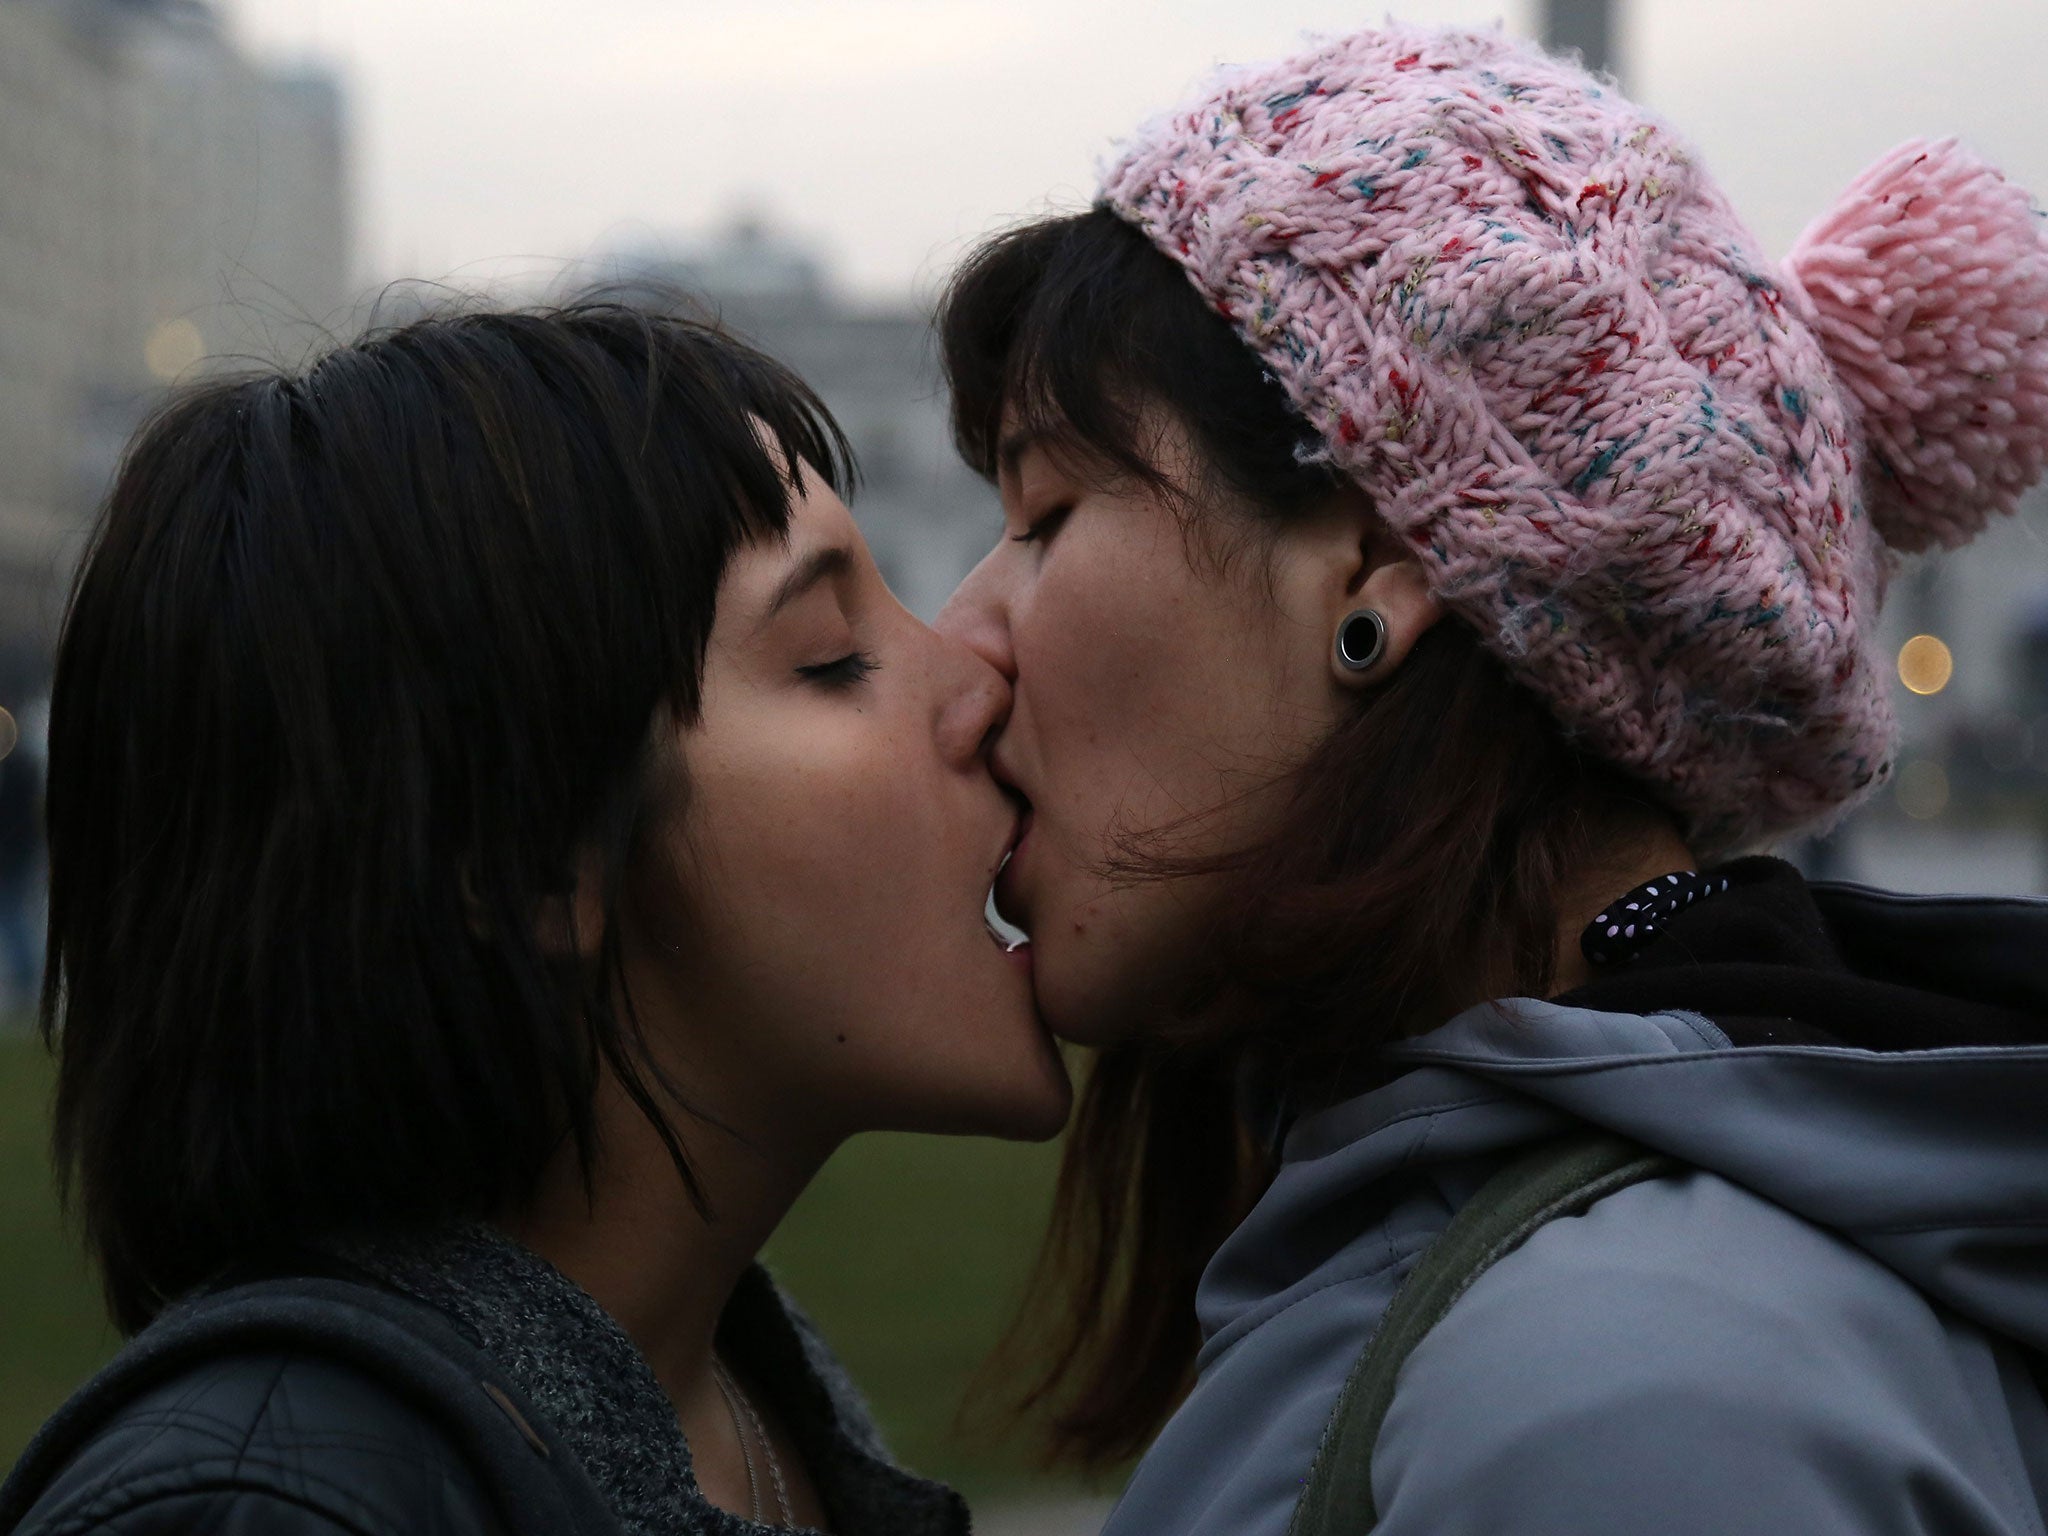 lesbians kiss